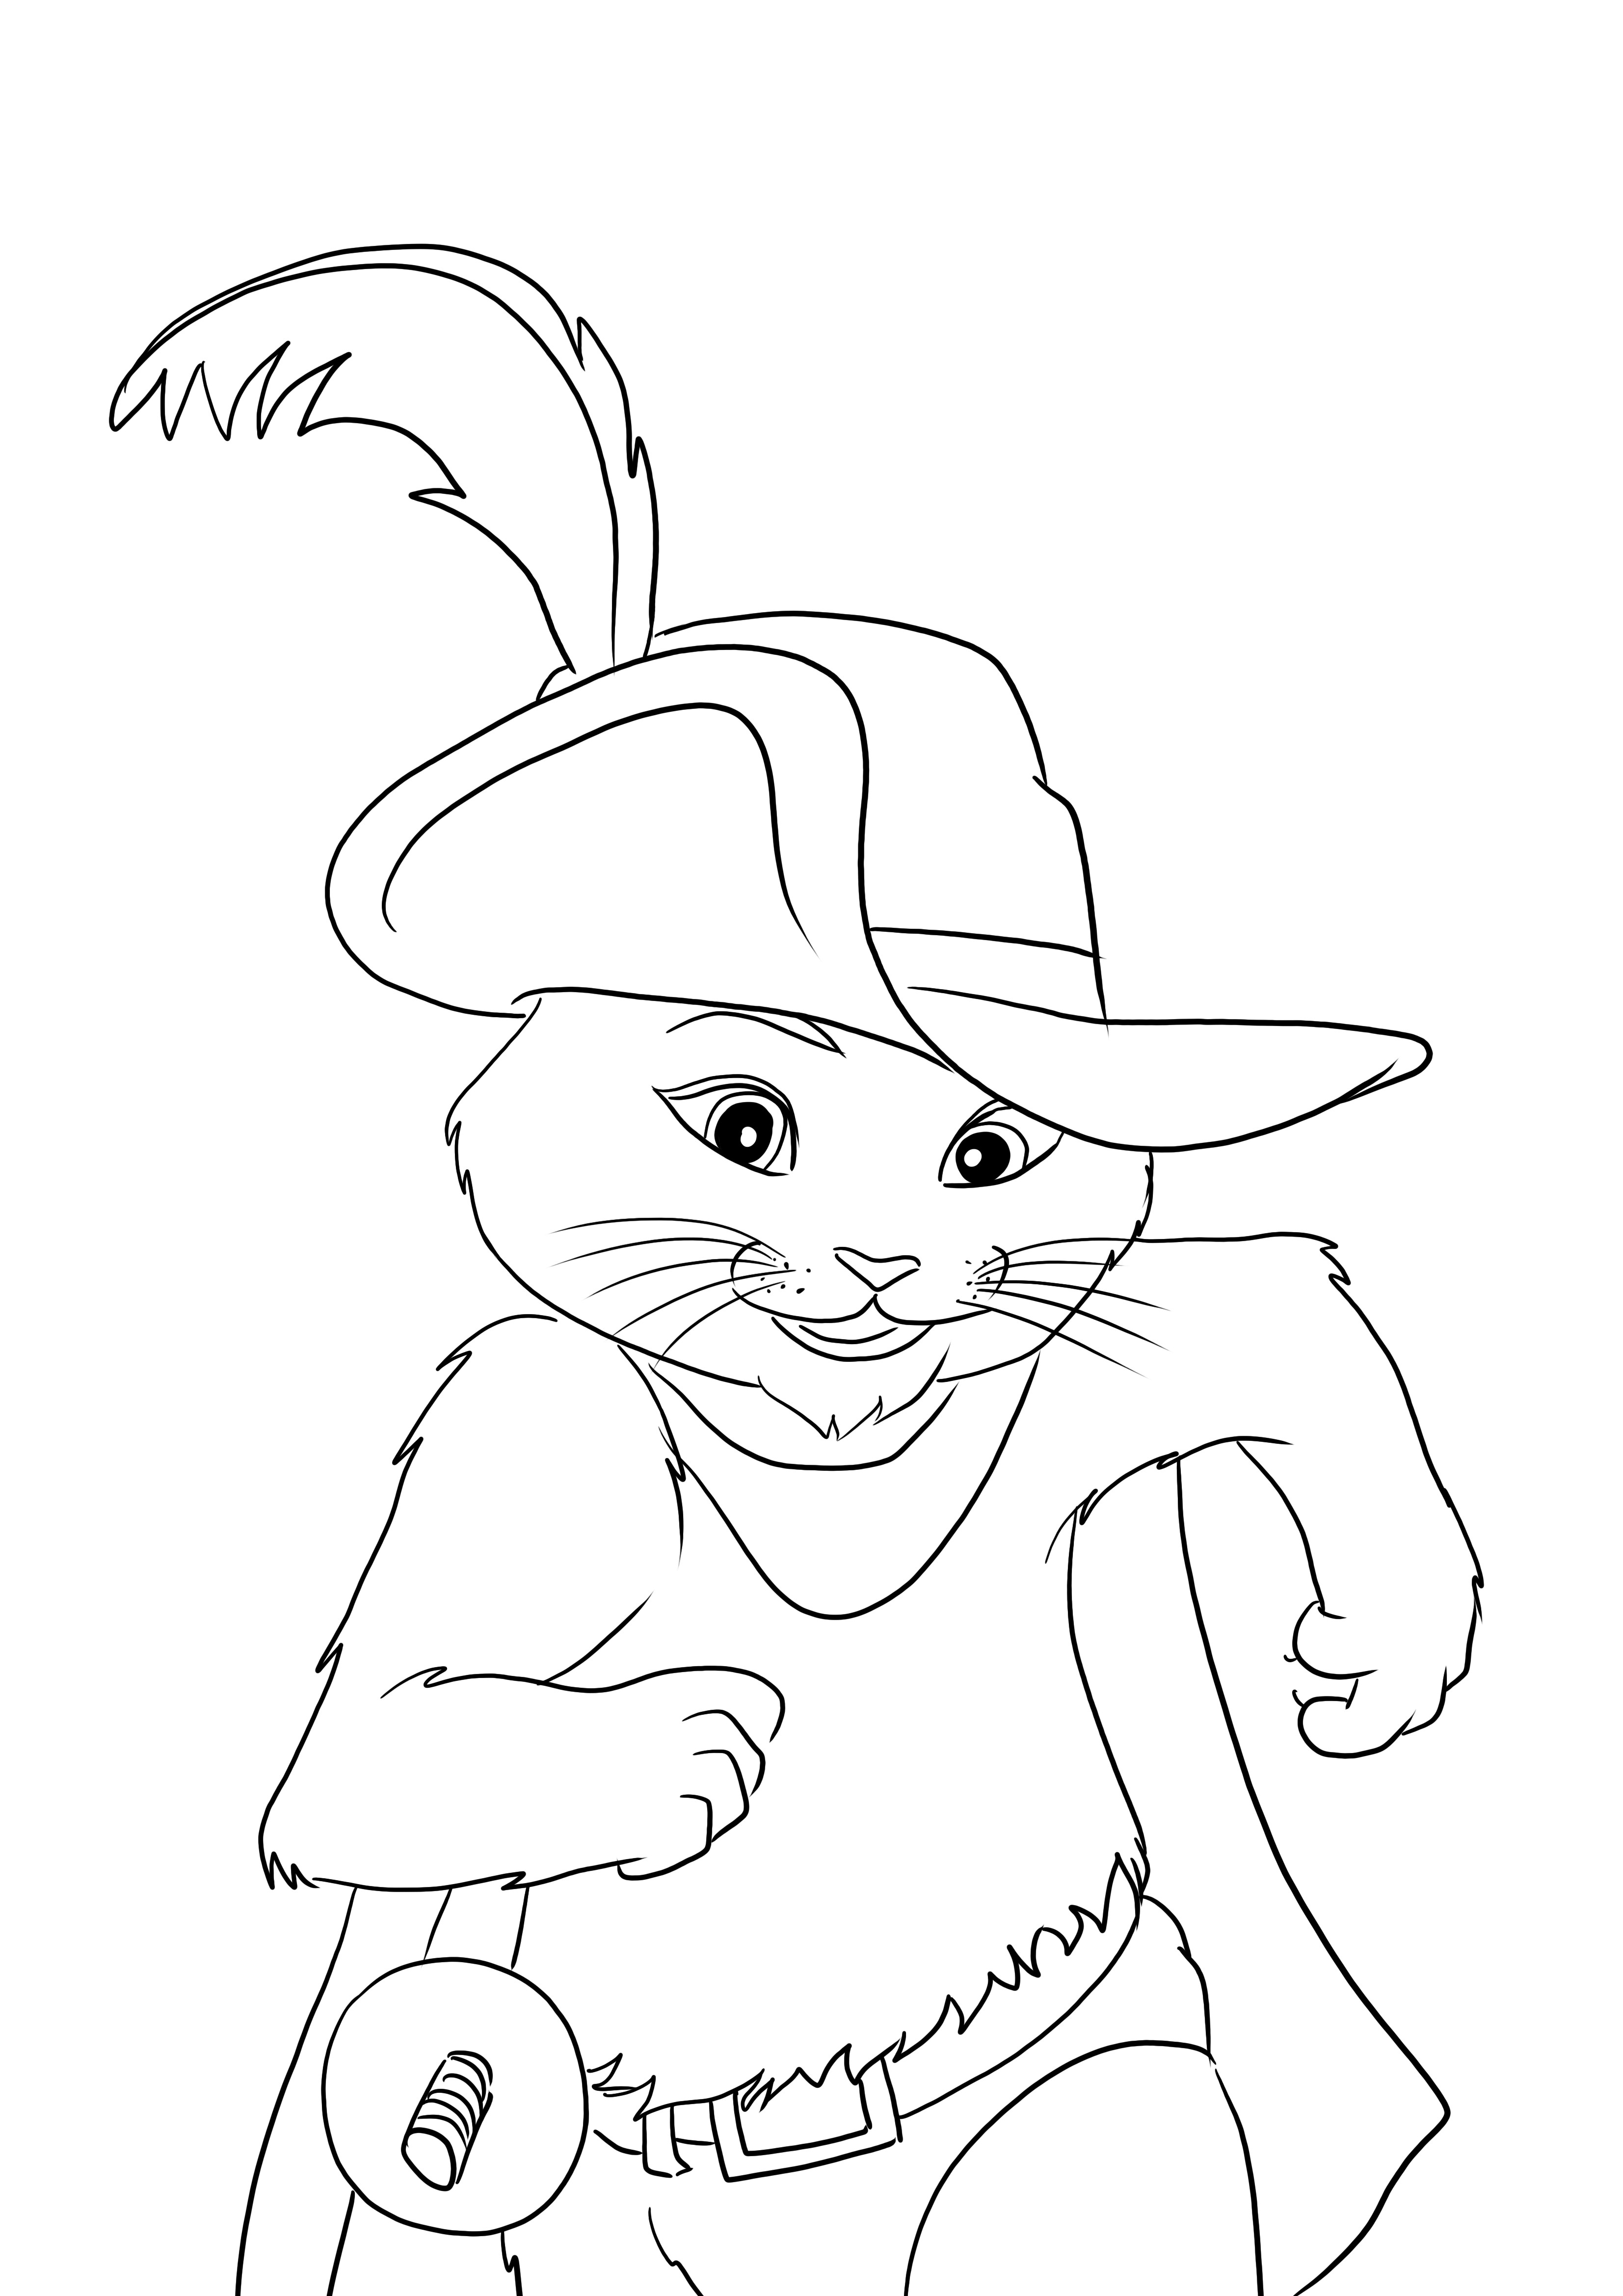 Çizmeli Kedi koşusu, yazdırması veya indirmesi kolay ücretsiz bir boyama sayfasıdır